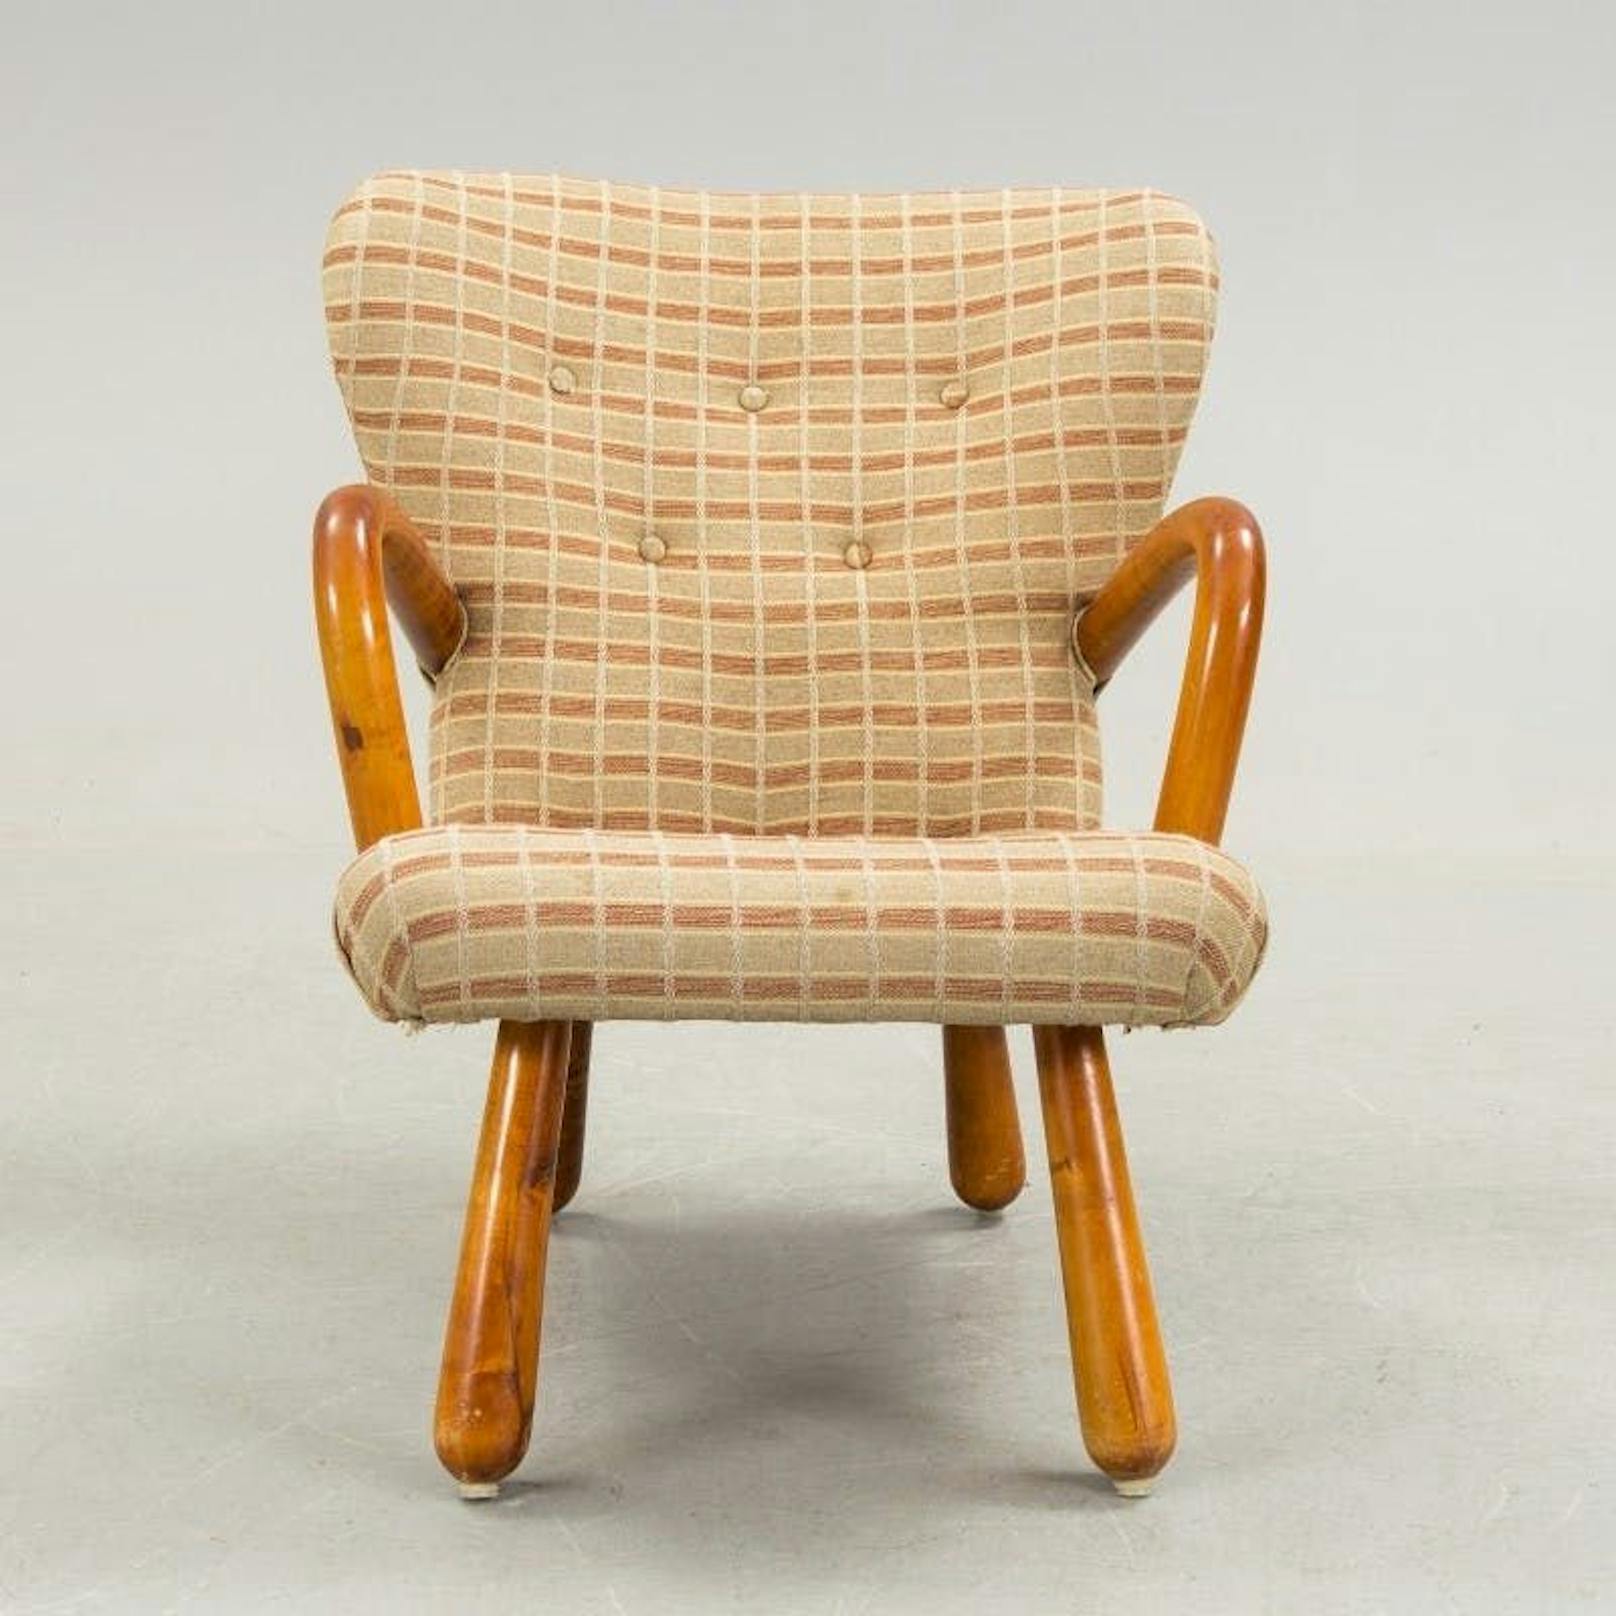 Der <strong>"Åke"-Sessel </strong>und das passende Sofa kamen in den 1950er-Jahren in das Sortiment von Ikea. Der Sessel geht auf das Design des 1944 entworfenen "Clam Chair" des dänischen Architekten und Designers Philip Arctander zurück und kostete im Jahr 1956 umgerechnet etwa 20 Euro. Bei einer Auktion von Bukowskis im Jahre 2016 kam ein Exemplar für mehr als <strong>1000 Euro</strong> unter den Hammer.